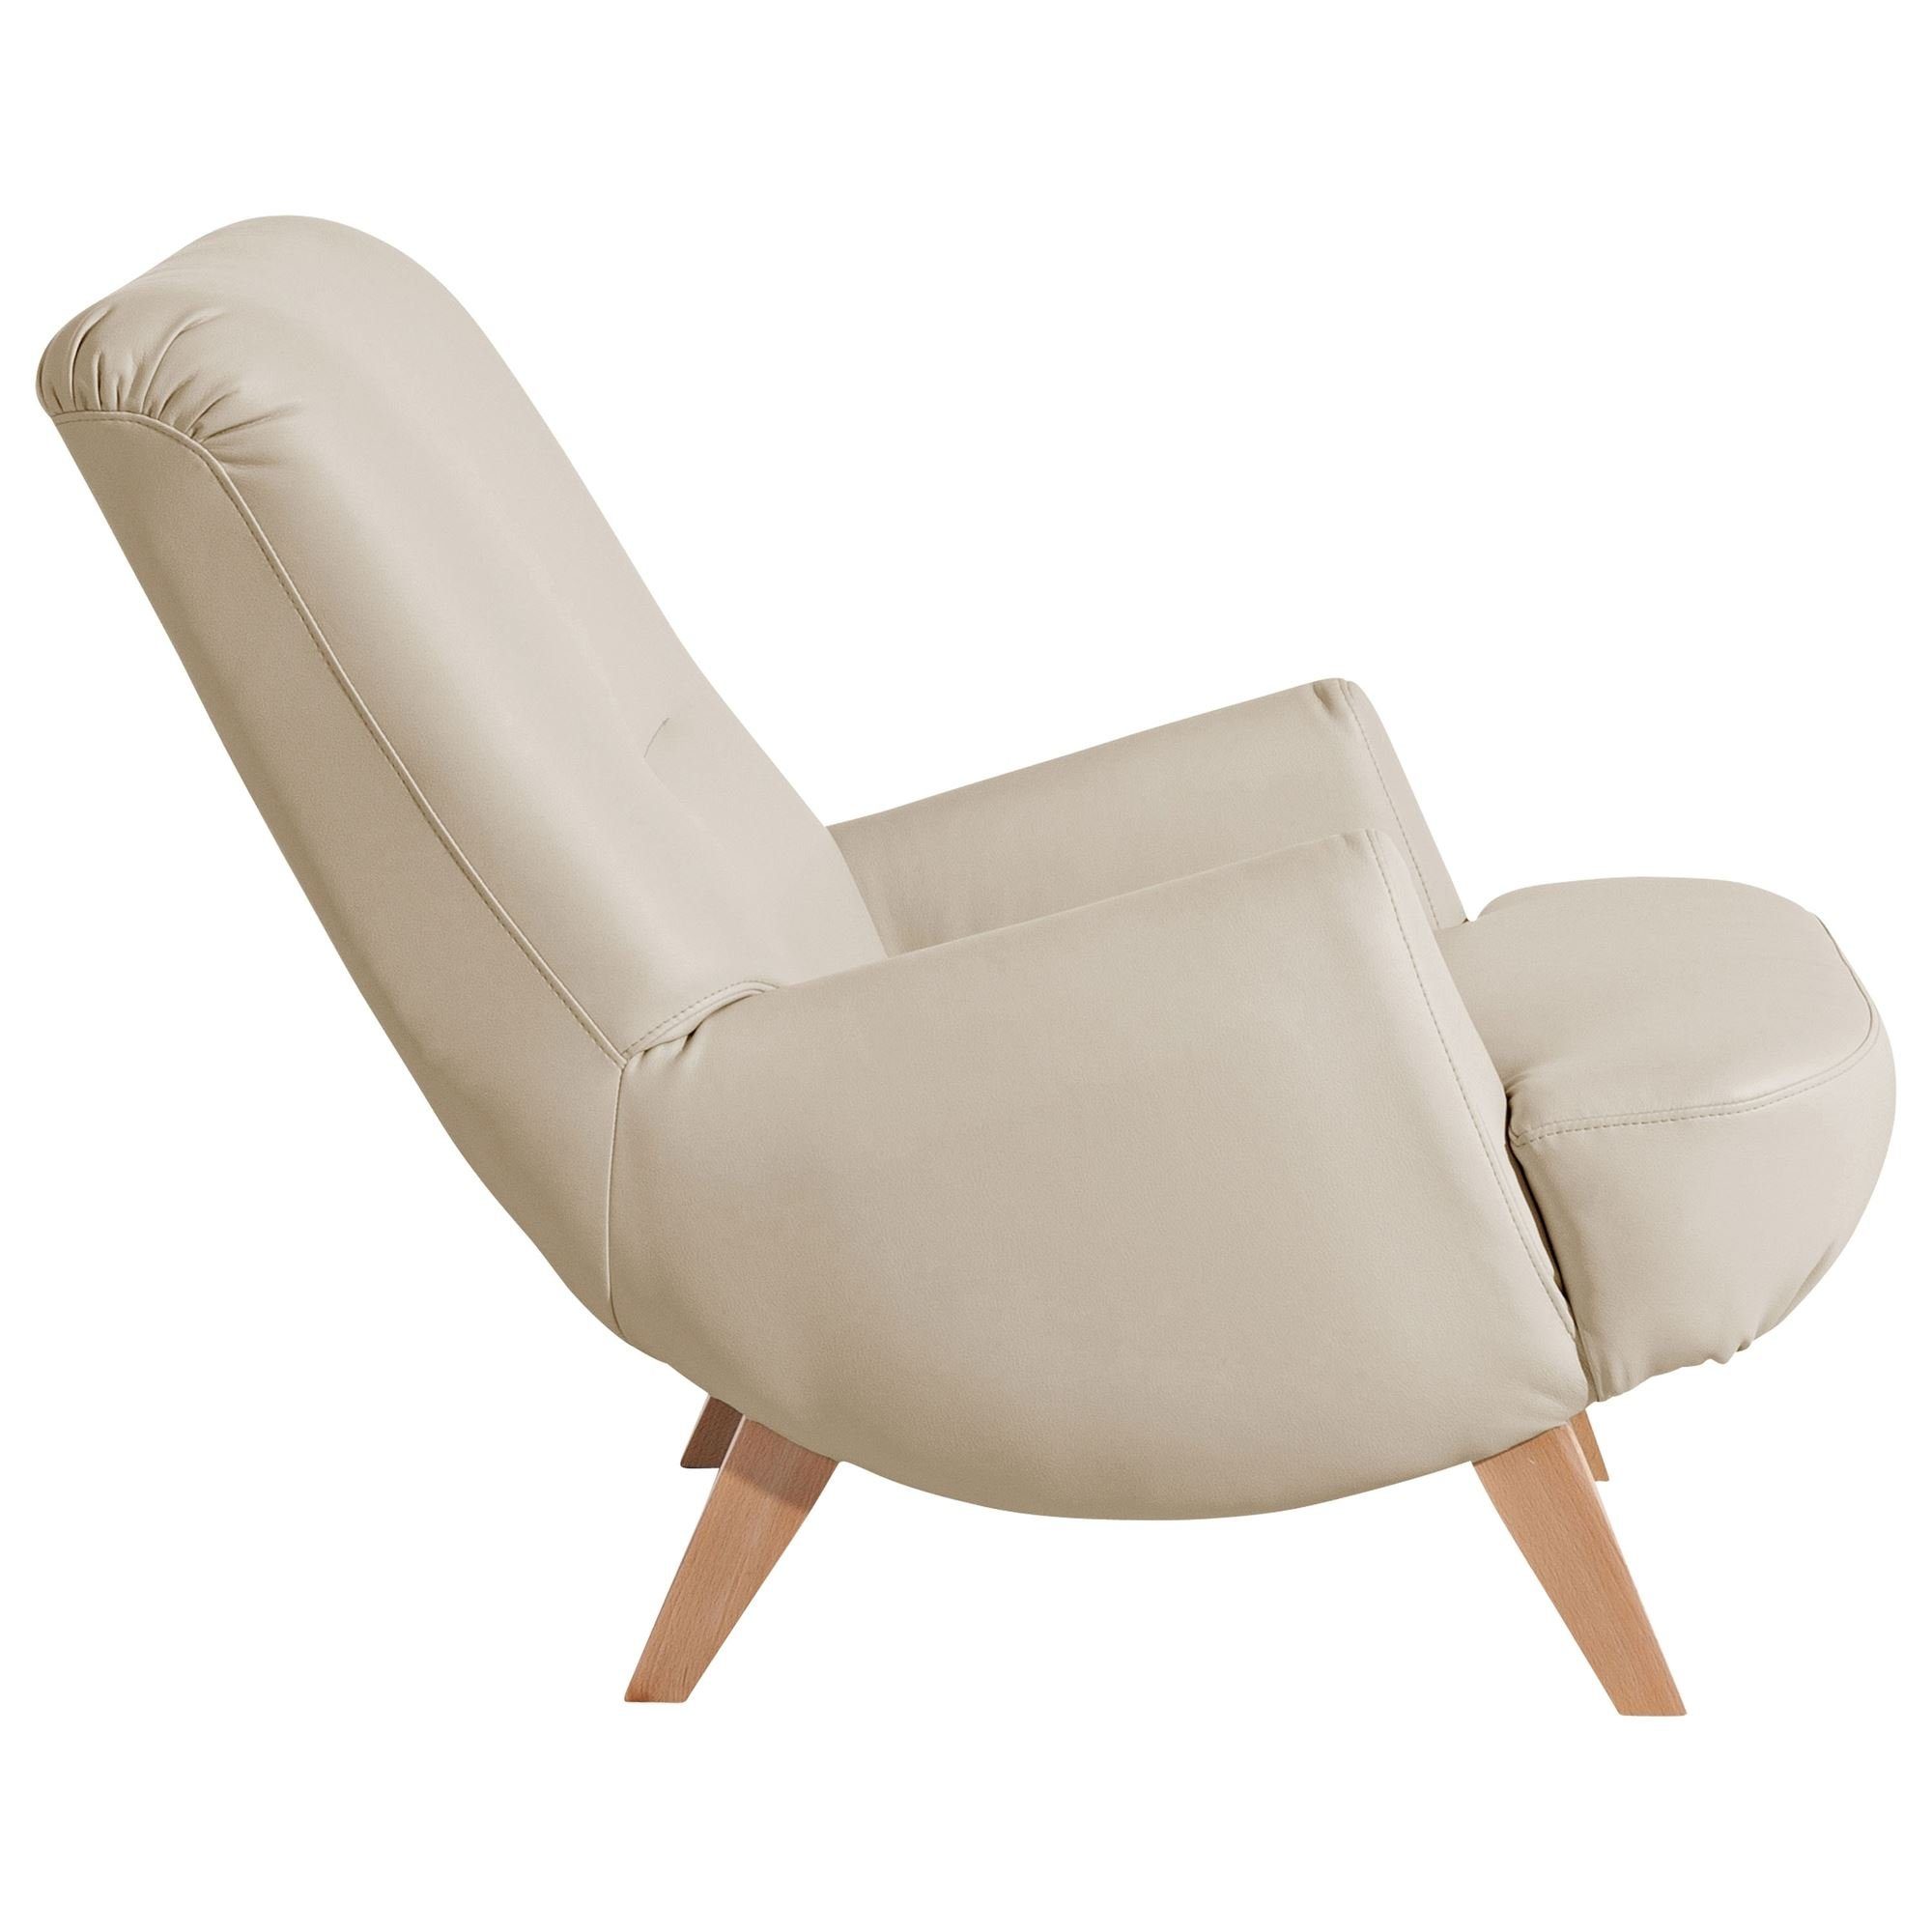 Kessel (Sparpreis Kostenlosem Versand, inkl. Sitz Buche / 21326 verarbeitet,bequemer hochwertig aufm Kajsa 58 1-St), Sessel Sessel beige Bezug natur Kunstleder